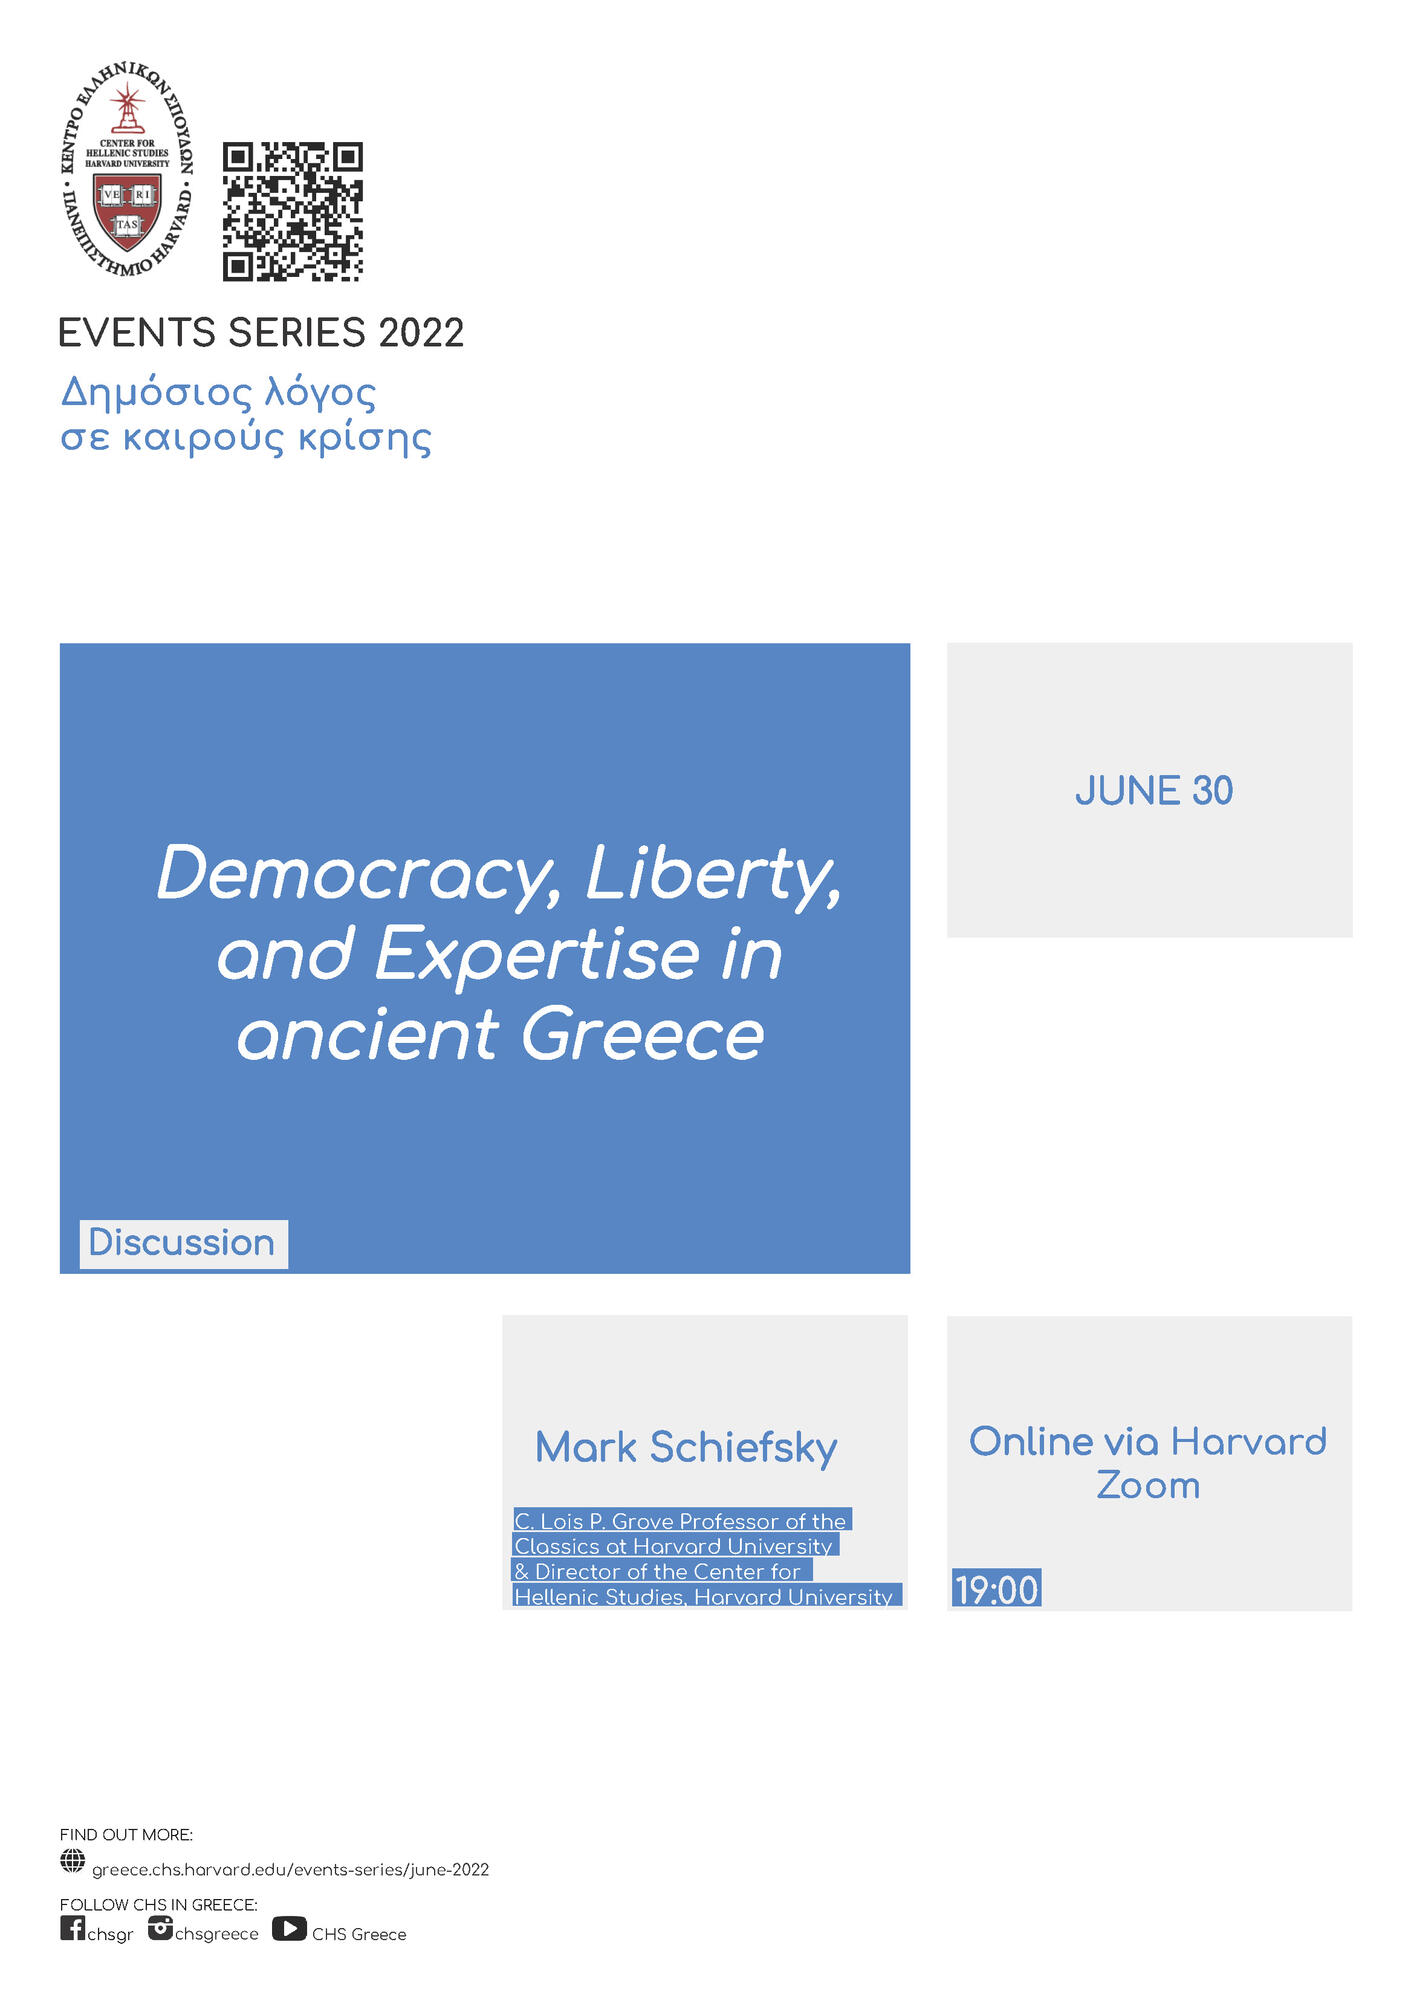 Δημοκρατία, Ελευθερία και Τεχνοκρατία στην Αρχαία Ελλάδα / Αφίσα με τα στοιχεία της εκδήλωσης που περιλαμβάνει λίγα γκρι και μπλε πλαίσια σε λευκό φόντο.